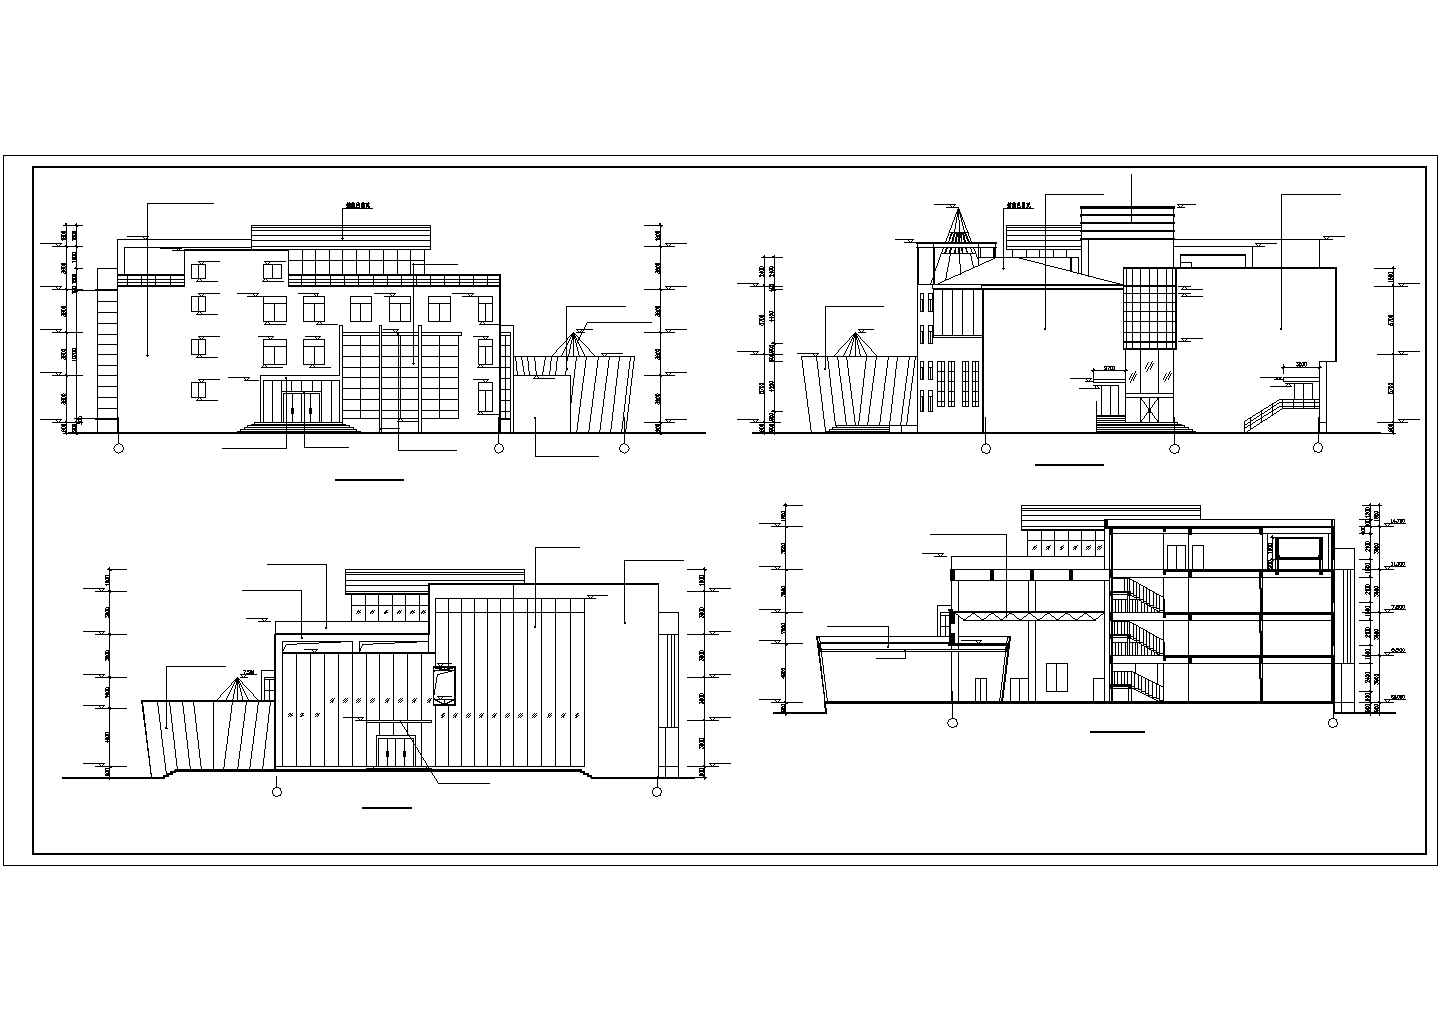  四层框架结构艺术学院图书馆及阶梯教室综合楼含详图